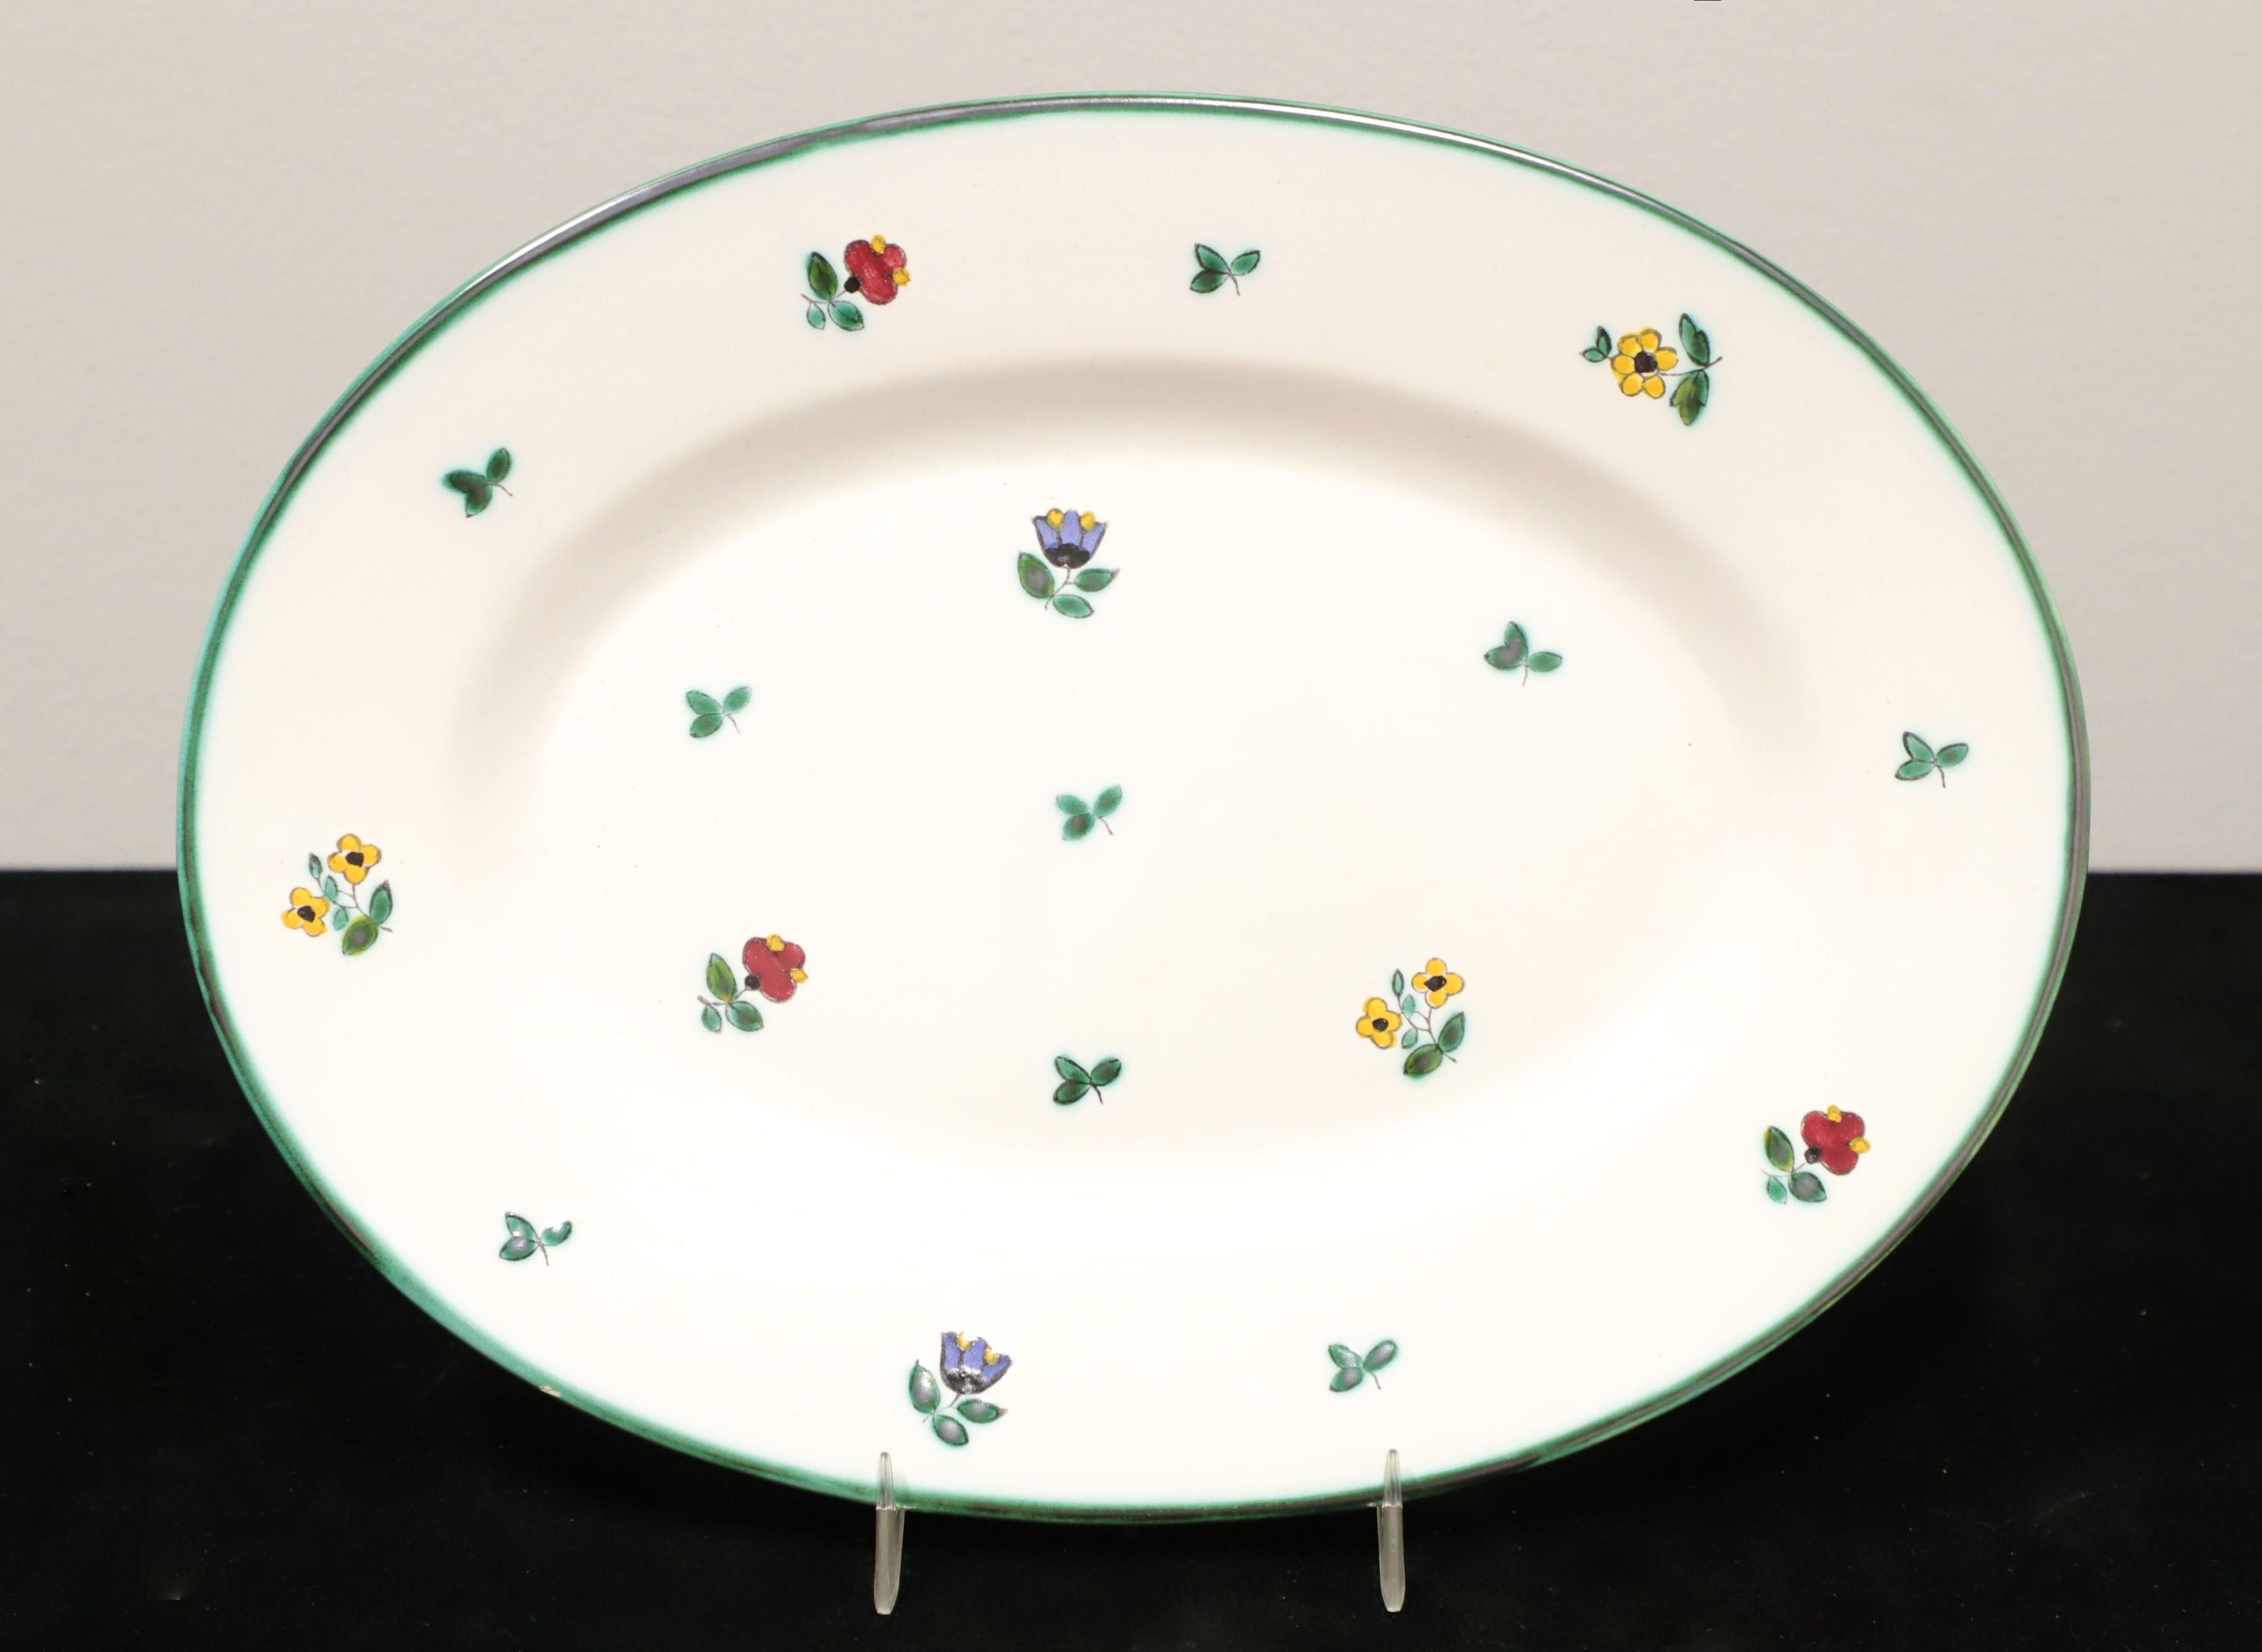 Un ensemble de quatre pièces de service du milieu du 20e siècle de Gmundner Keramik, dans leur motif Streublumen (fleurs éparses). Tous les objets sont en céramique et peints à la main. Ils représentent des fleurs de différentes couleurs et des